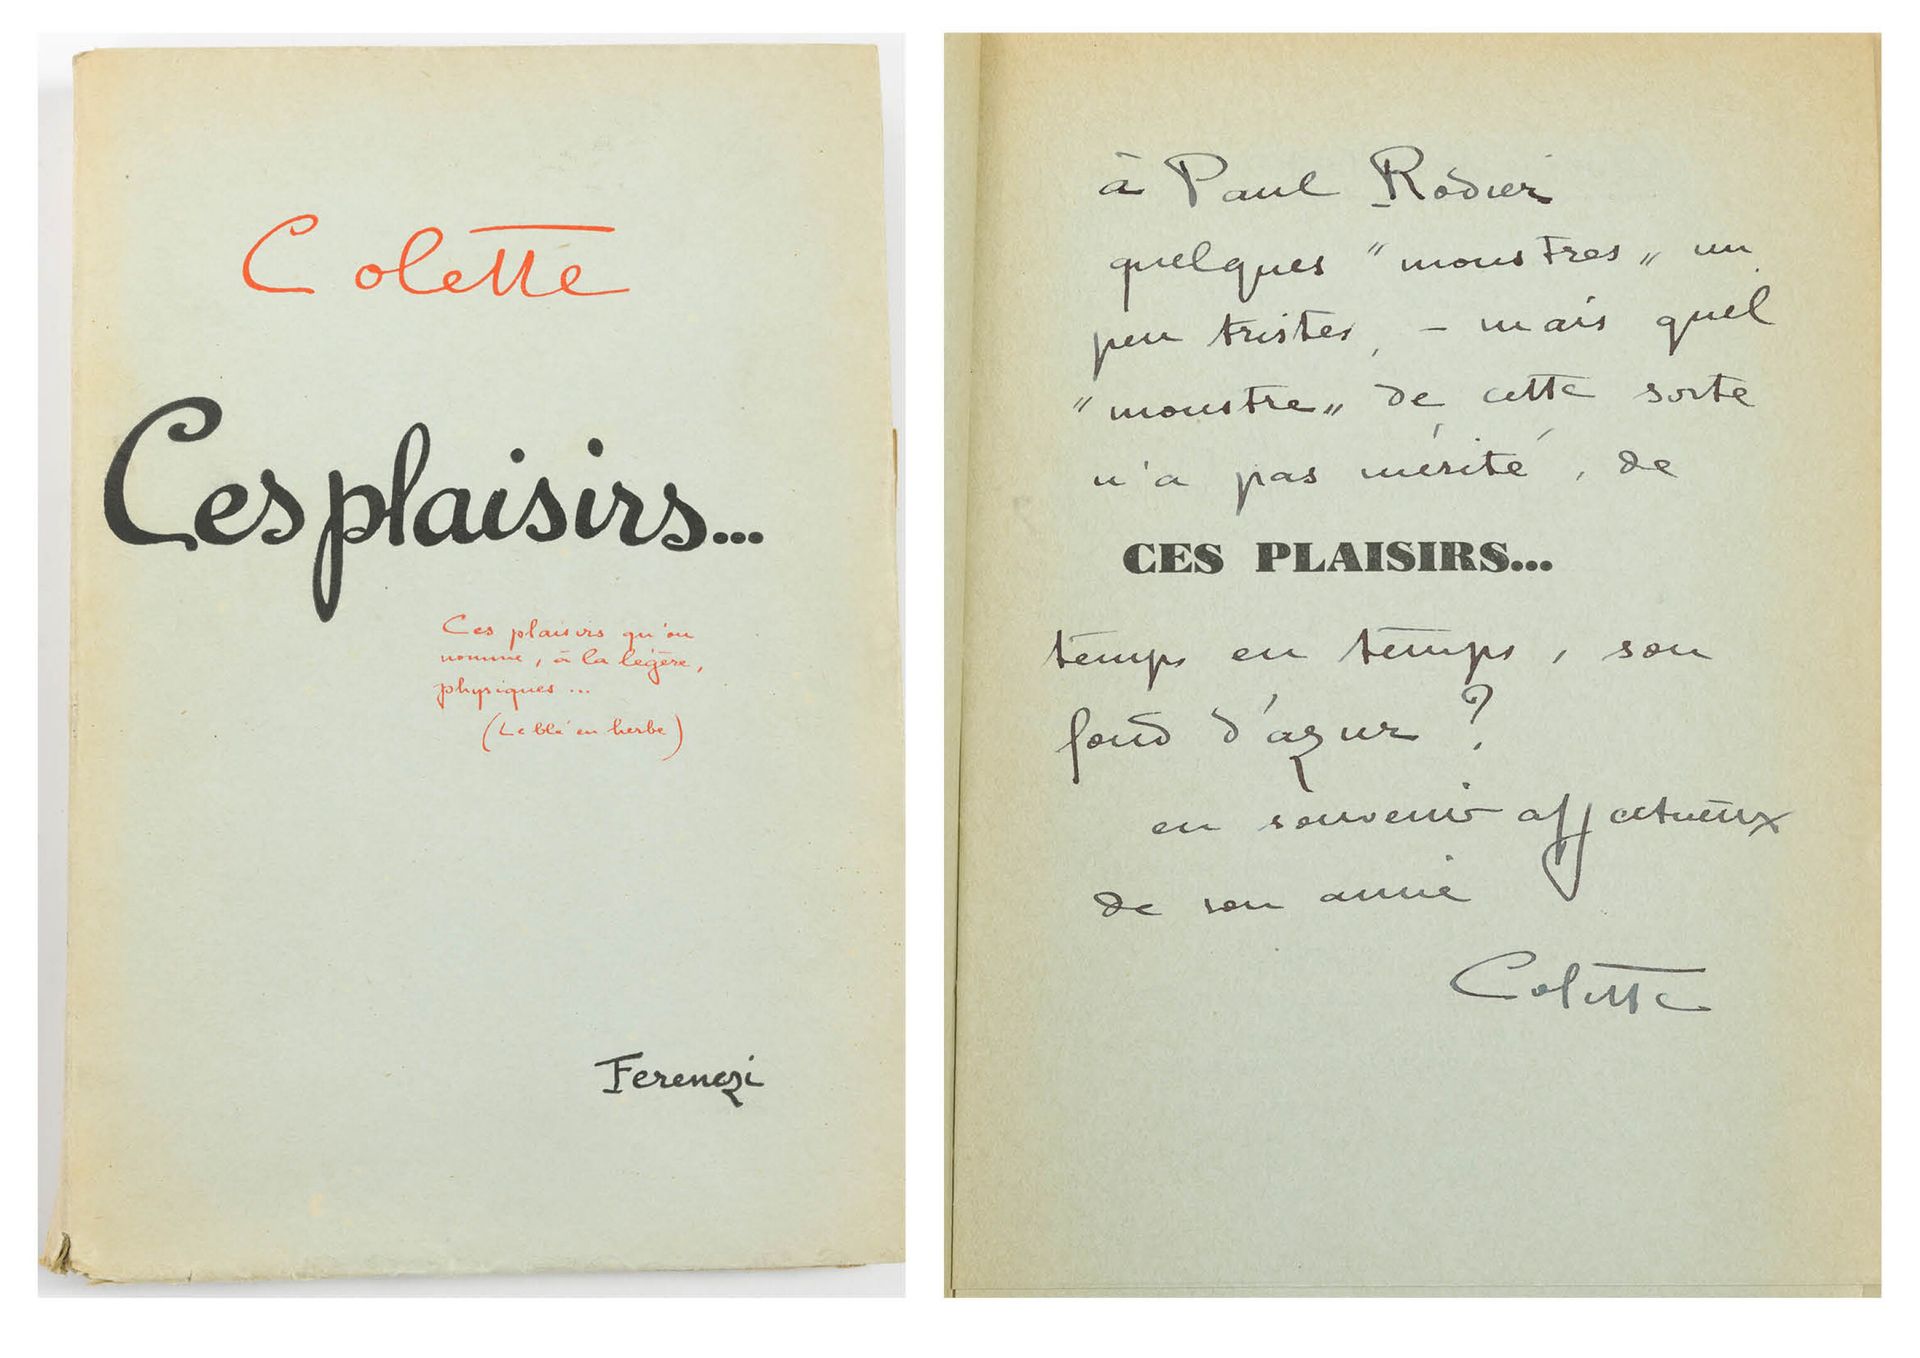 COLETTE 这些乐趣...

J.Ferenezi & Fils Editeurs, 巴黎。1932.

一卷8开本的彩色仿制日本书。

献给第一页。

磨&hellip;